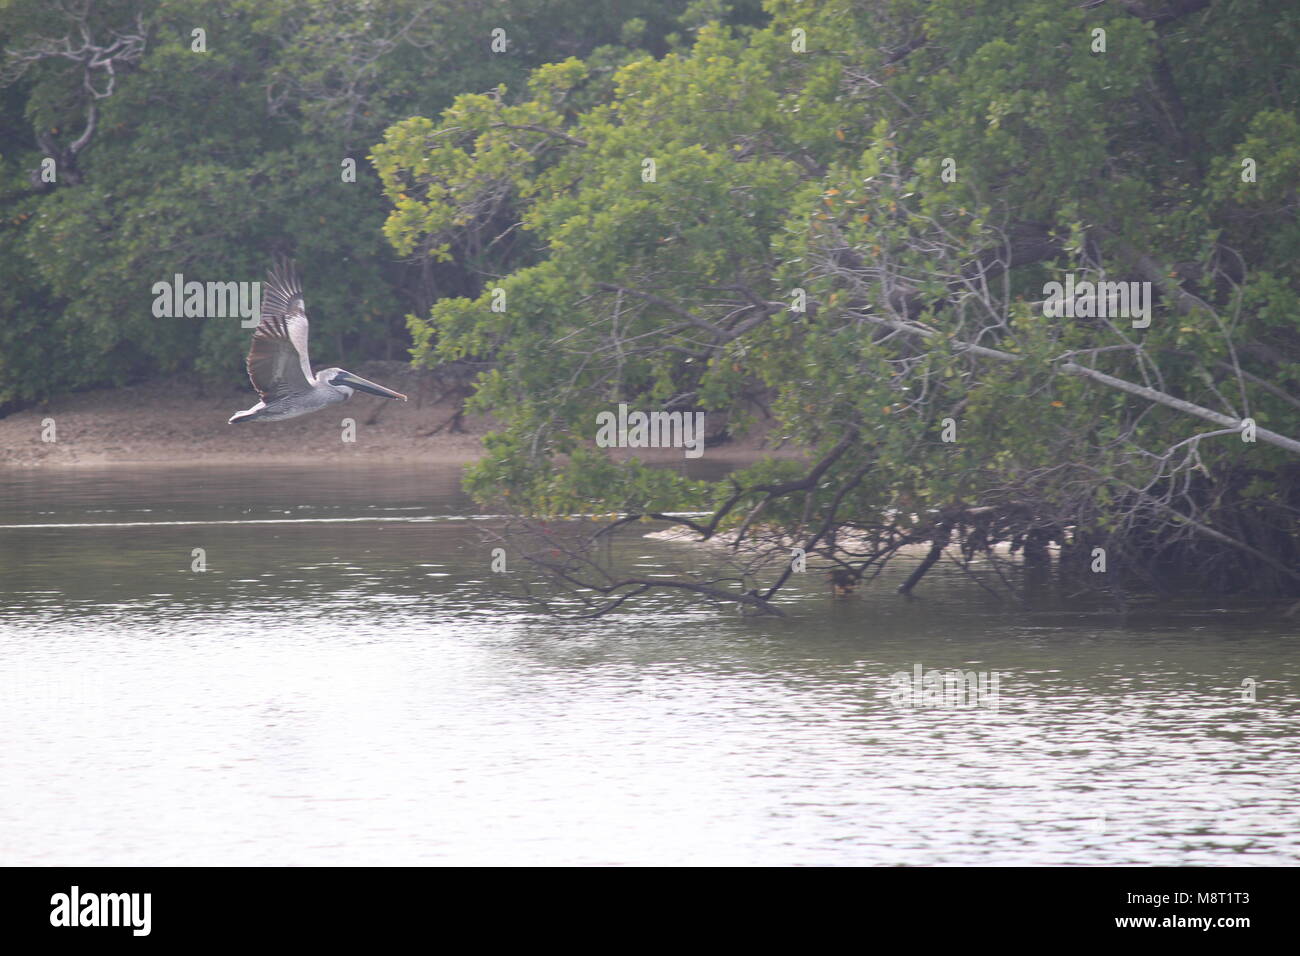 Grau pelican im Flug mit Flügeln über Wasser in der Nähe von Bäumen Stockfoto